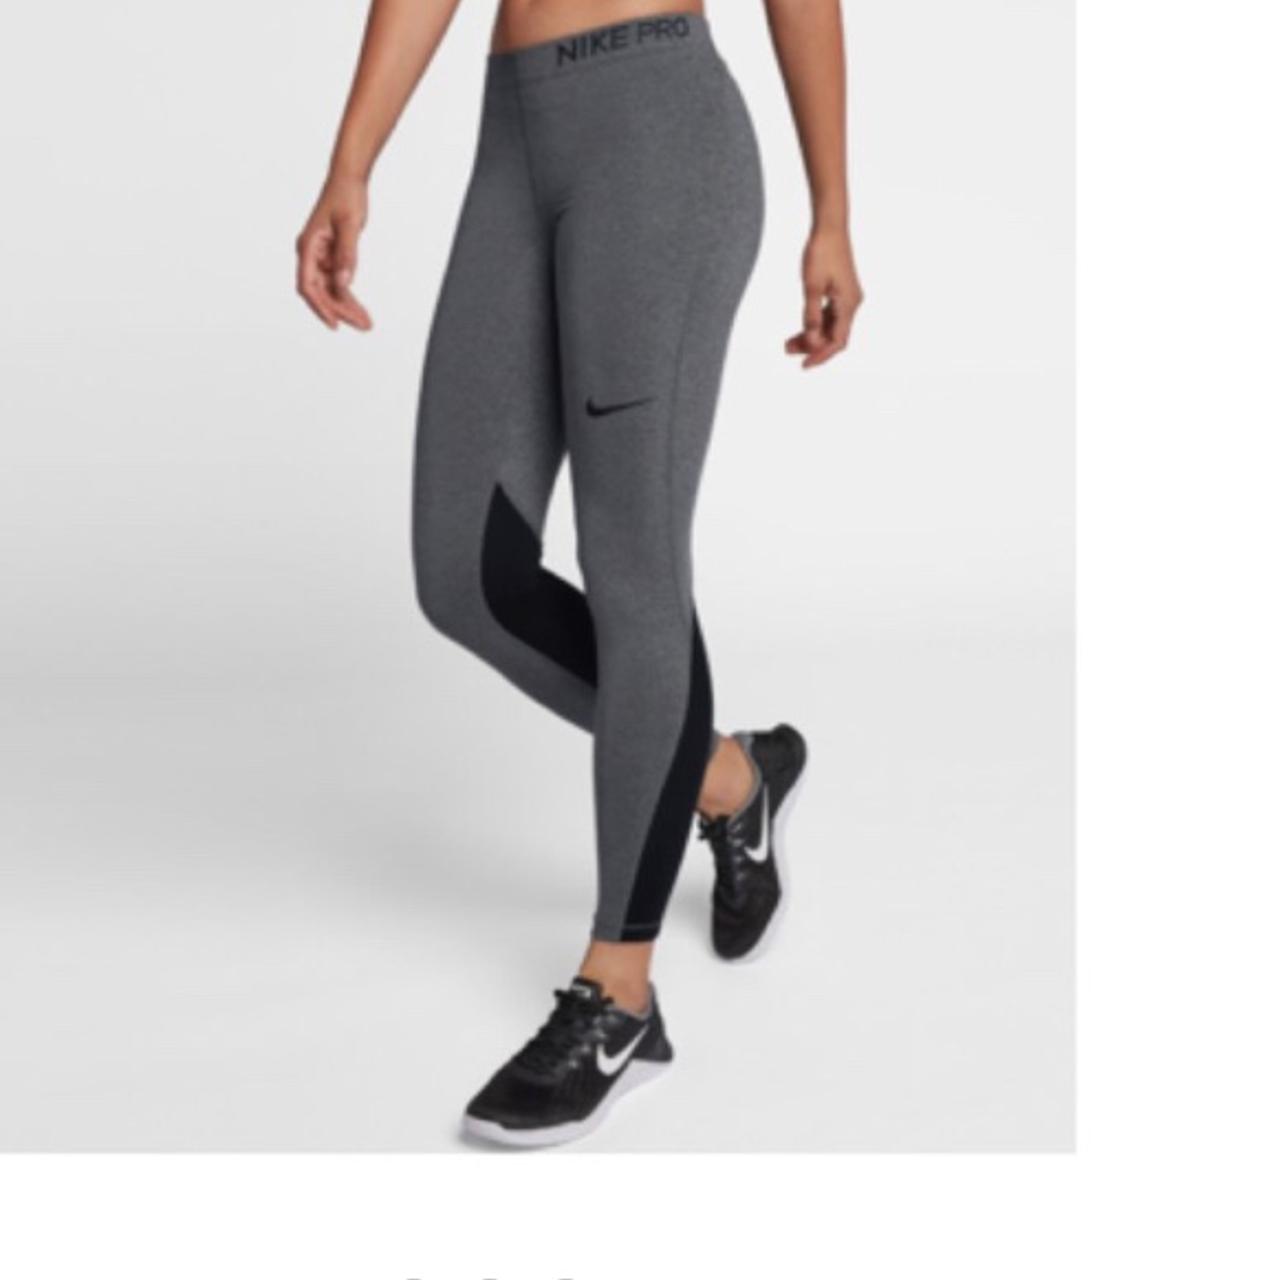 Nike pro leggings Women's size Small Nike pro - Depop